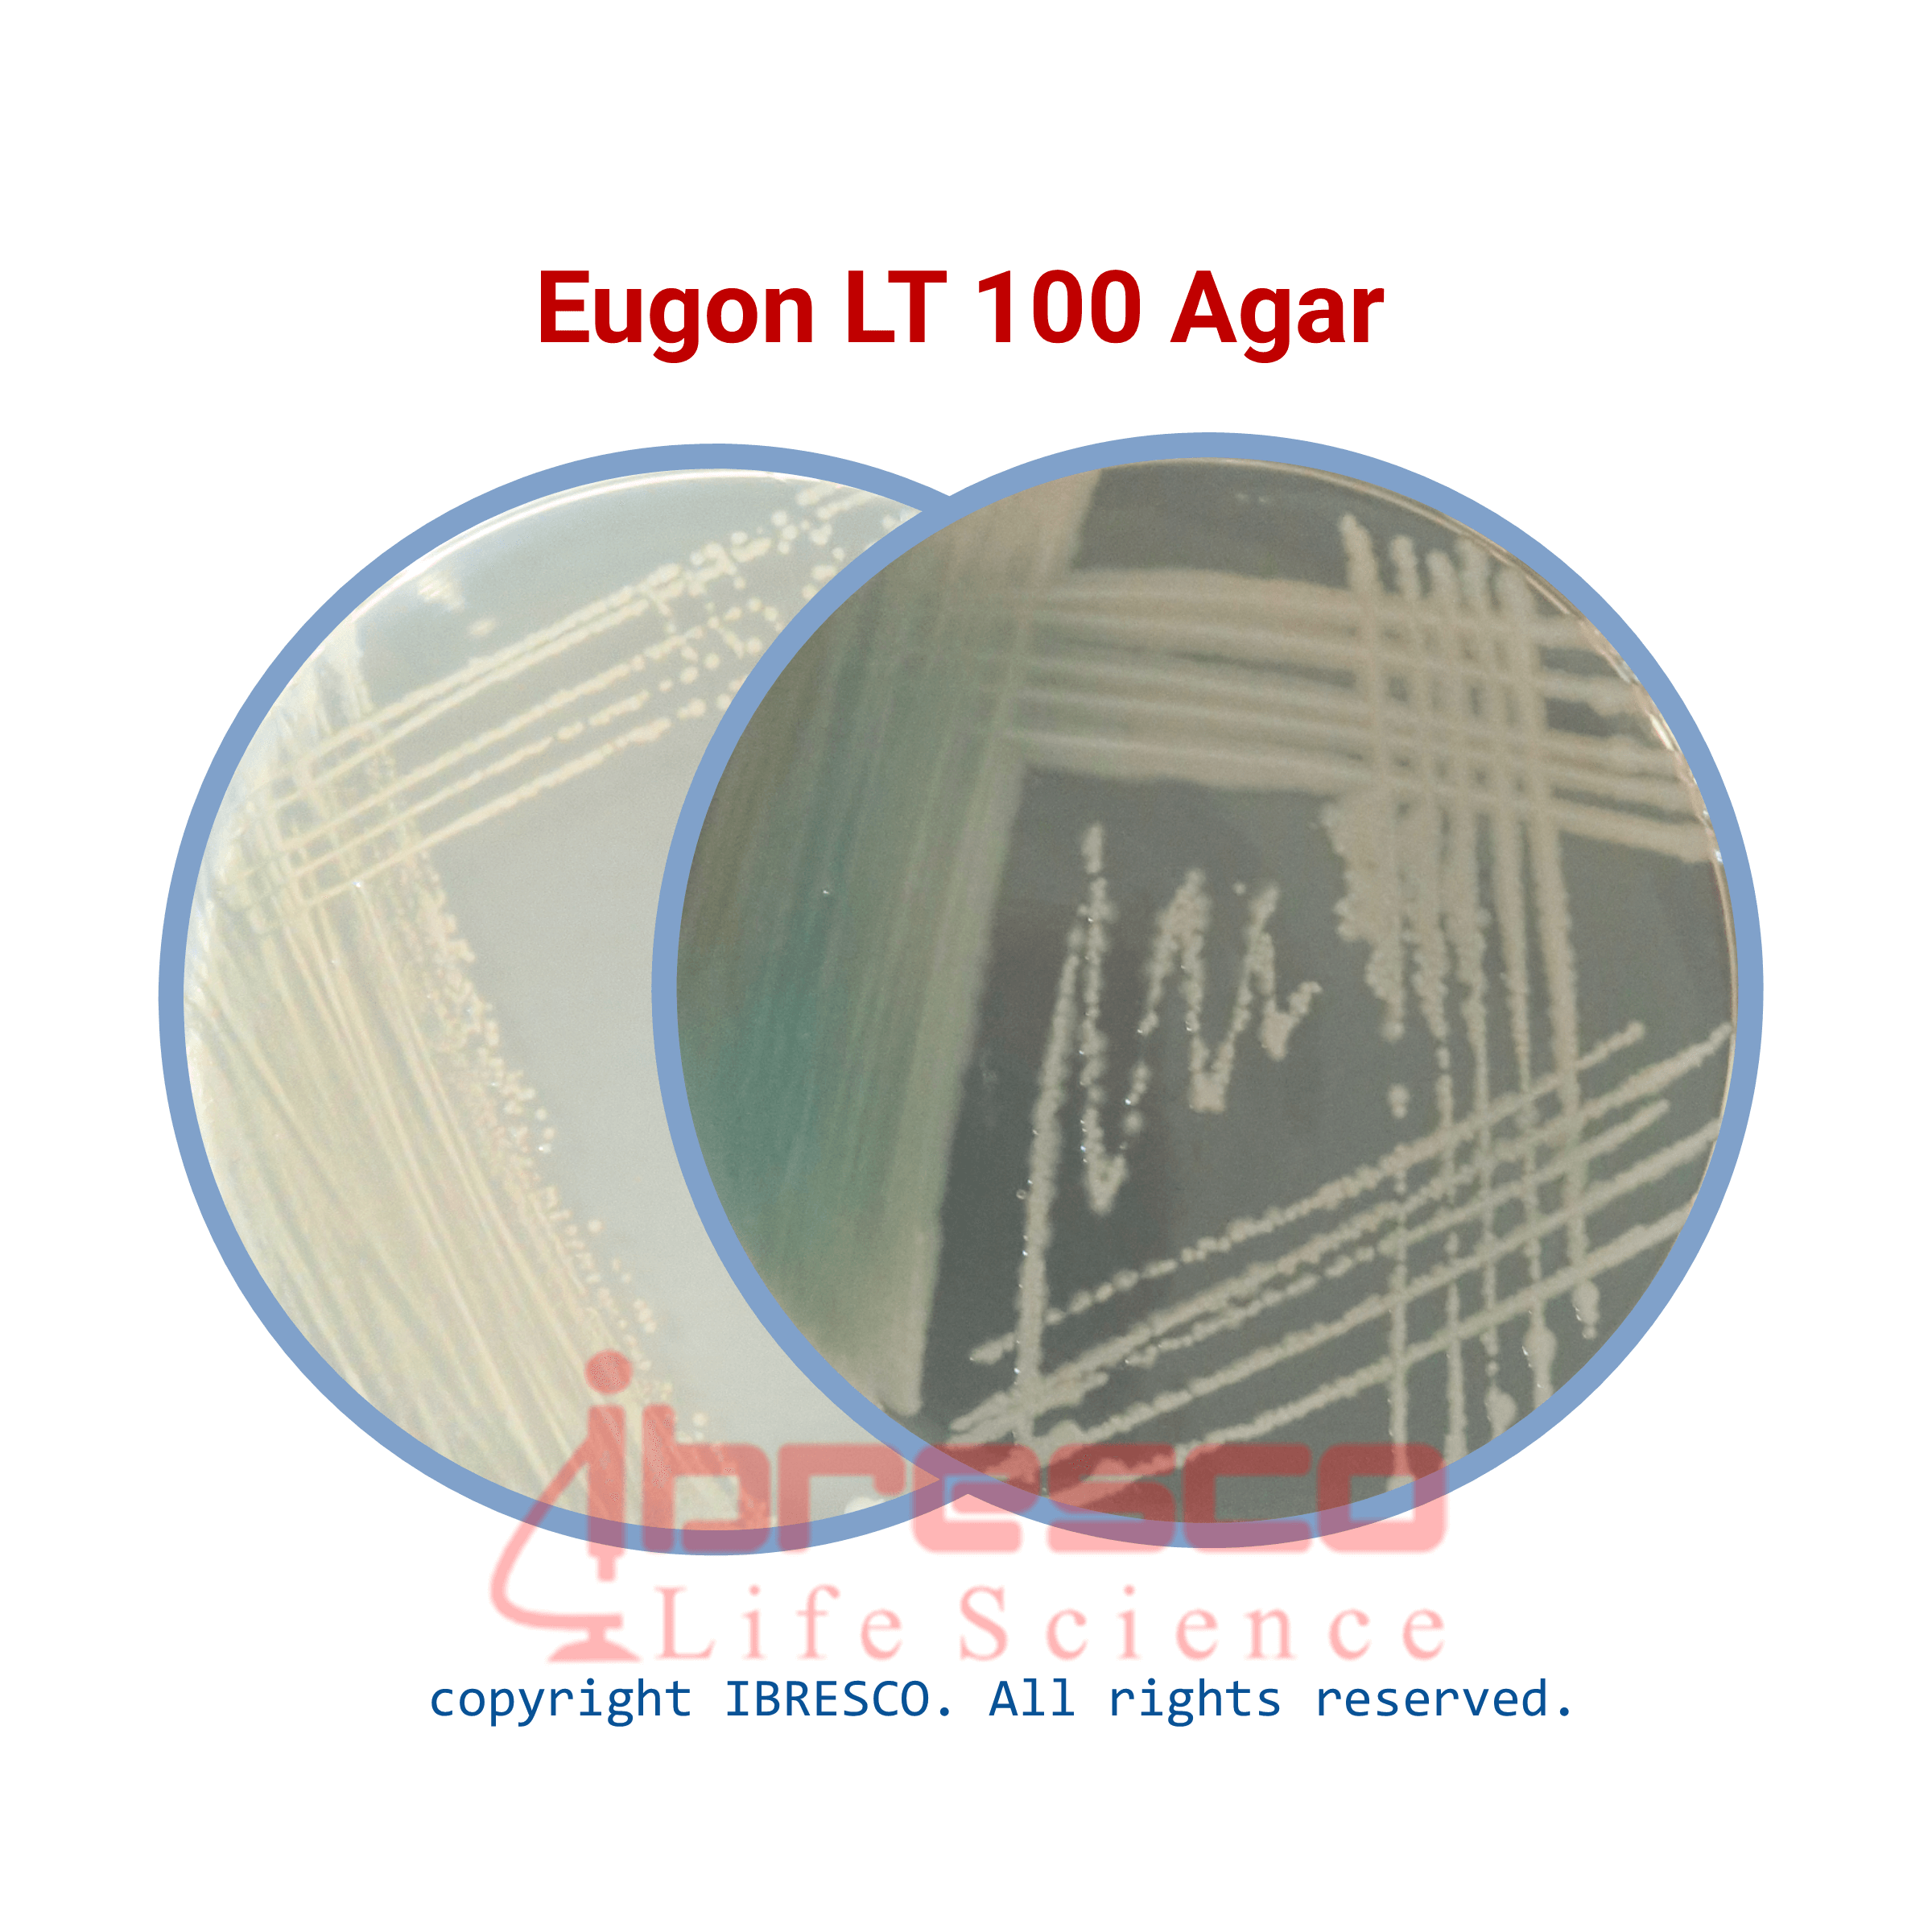 EugonLT100 Agar-ibresco